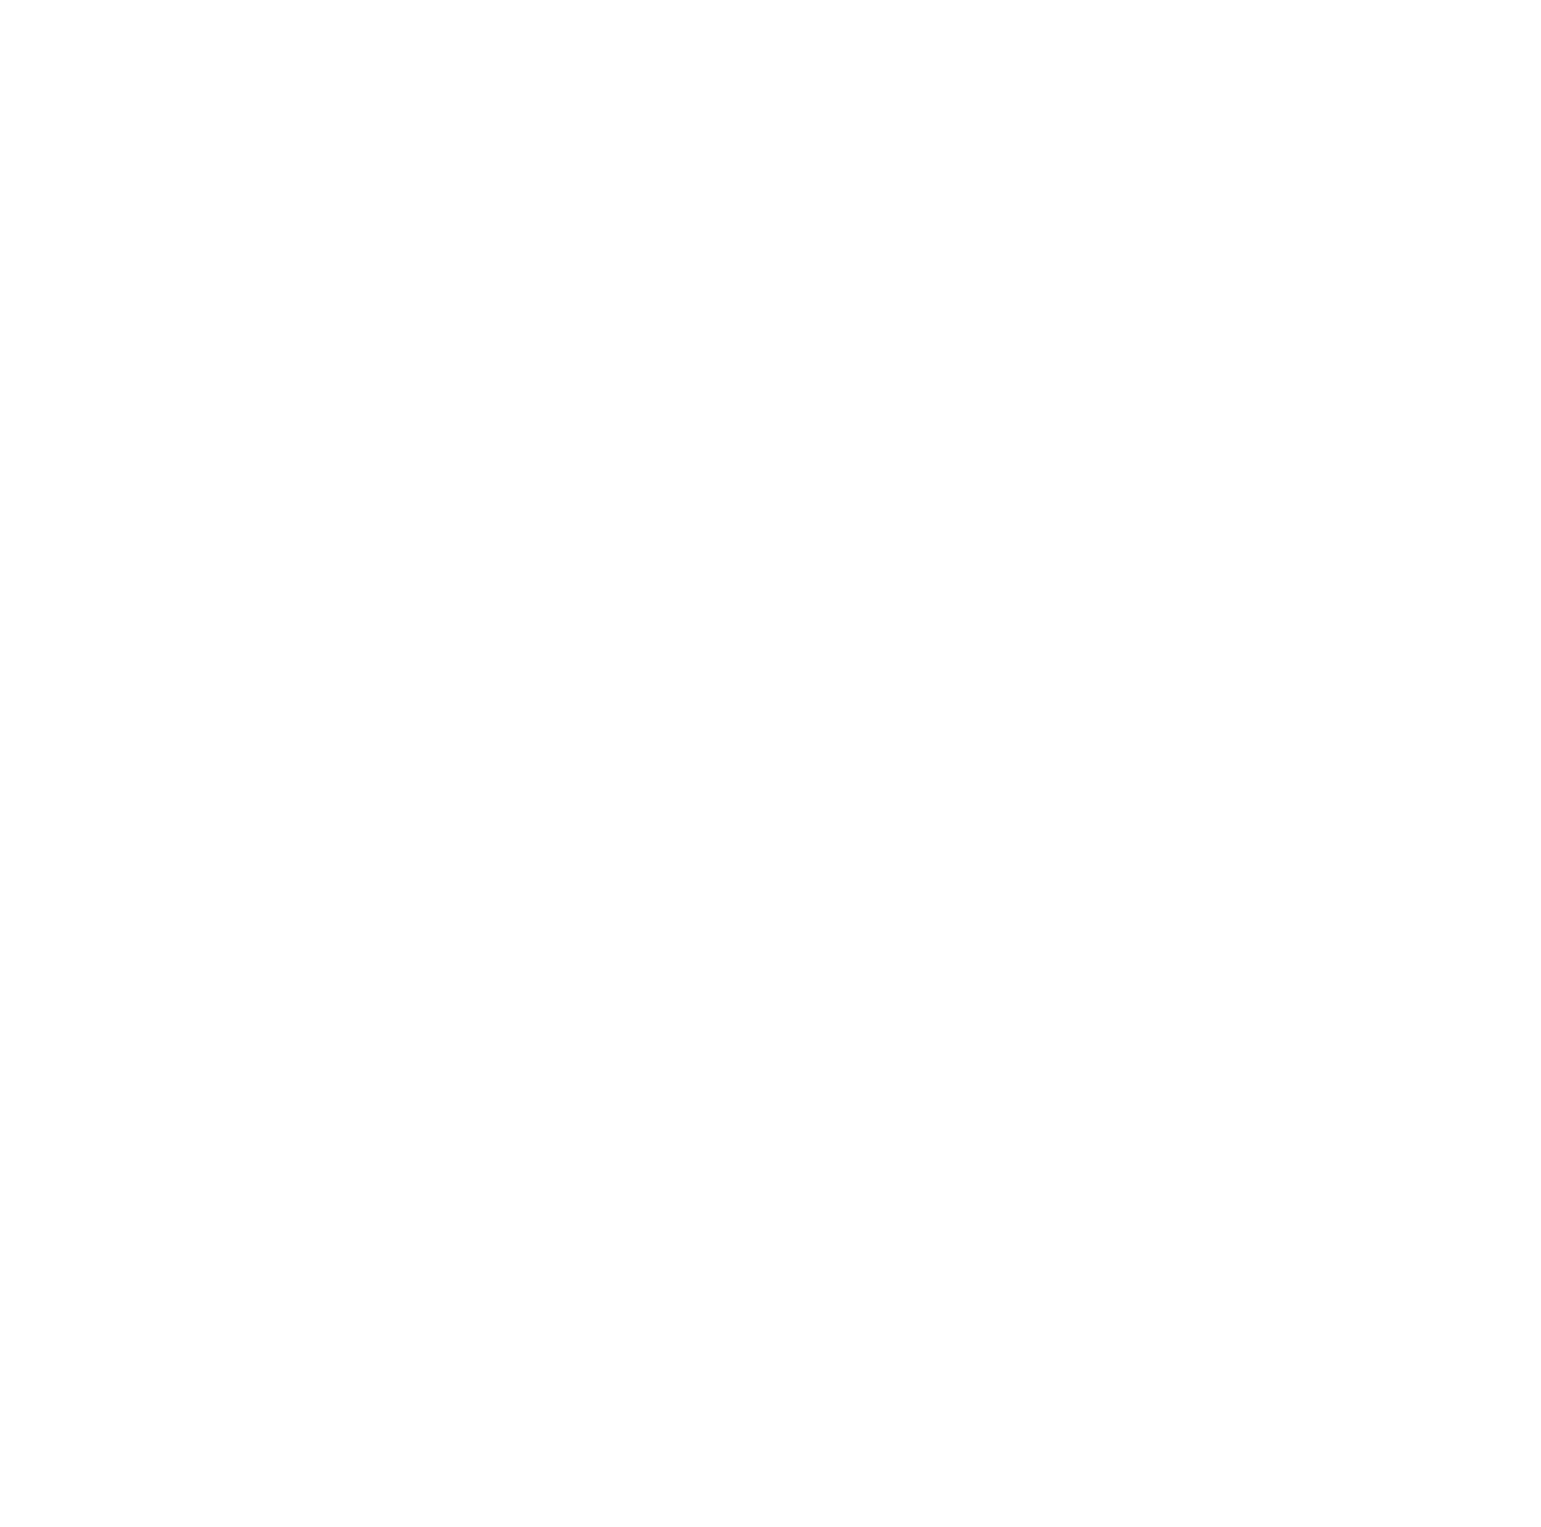 ITM Power logo pour fonds sombres (PNG transparent)